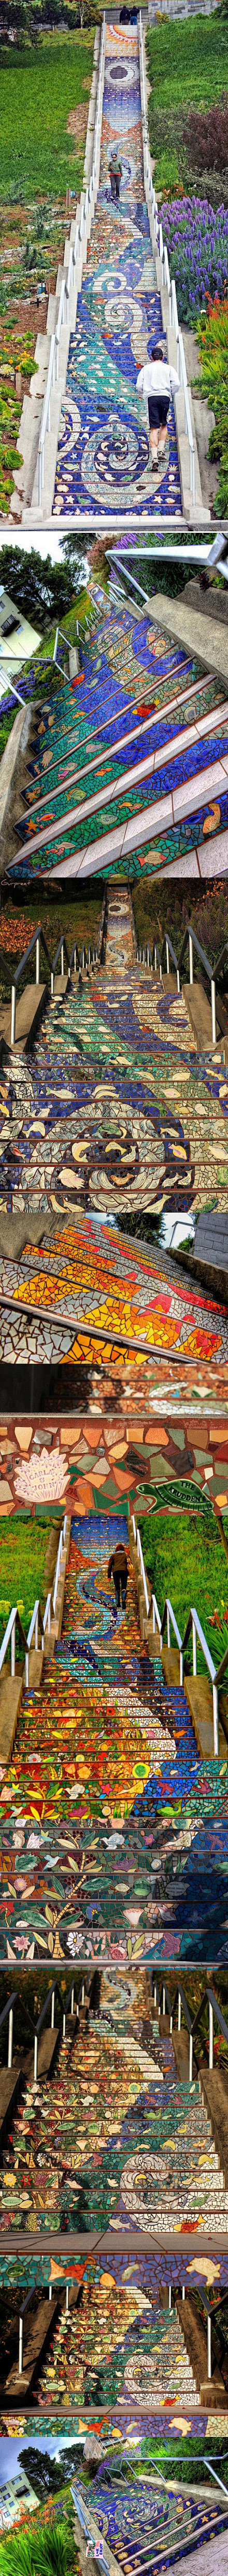 旧金山的Moraga街附近有一个艺术台阶...